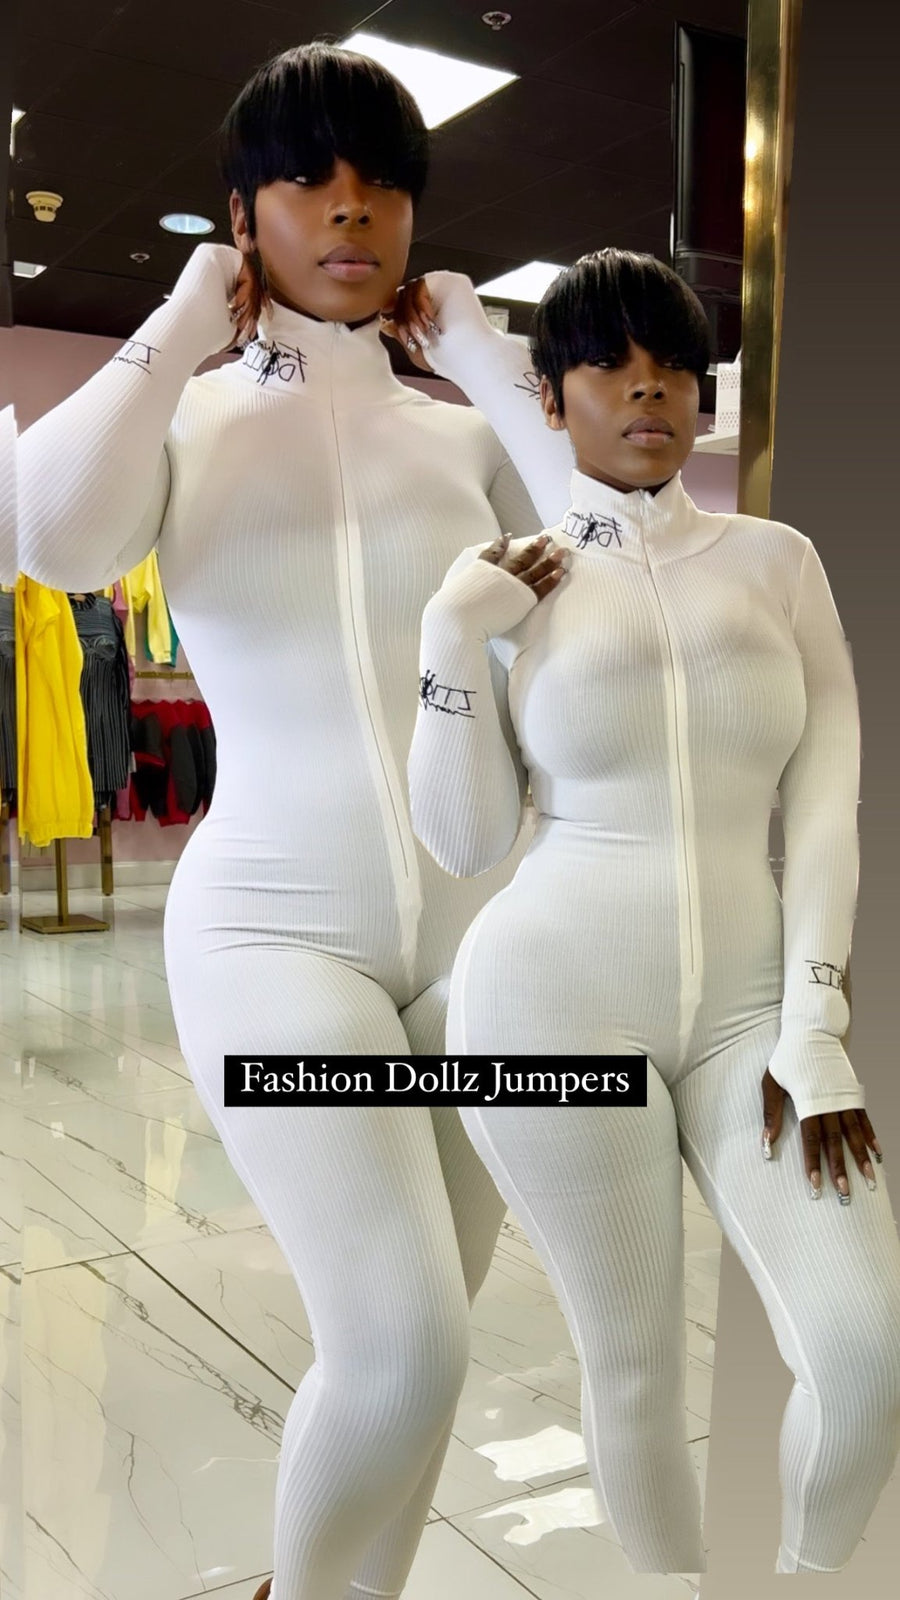 Fashion Dollz Jumpers - Fashion Dollz Boutique